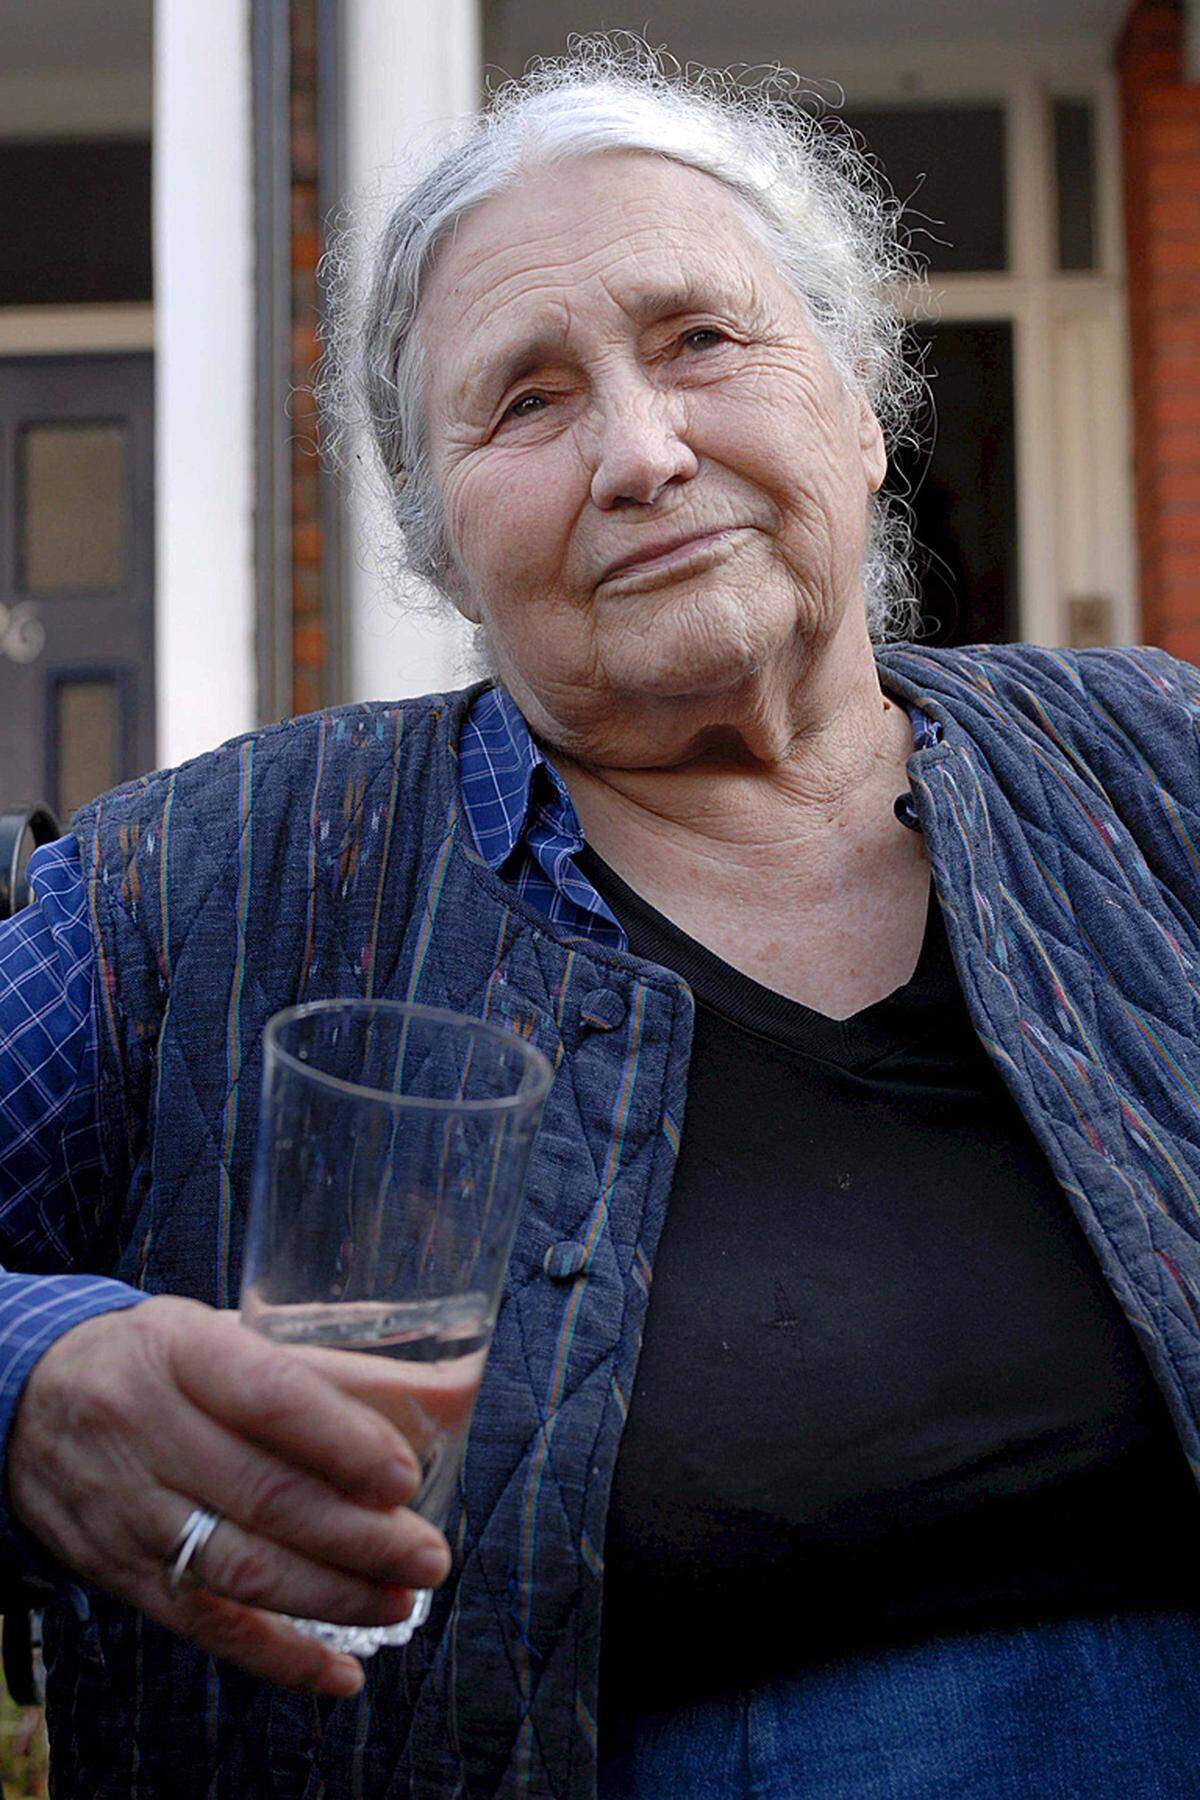 Doris Lessing (Großbritannien, 1919-2013) galt als eine der großen Autorinnen des 20. Jahrhunderts. 2007 erhielt die "Epikerin weiblicher Erfahrung, die sich mit Skepsis, Leidenschaft und visionärer Kraft eine zersplitterte Zivilisation zur Prüfung vorgenommen hat" den Literaturnobelpreis. Der feministische Roman "Das goldene Notizbuch" (1962) gilt als ihr Hauptwerk. Die Britin wurde 94 Jahre alt.